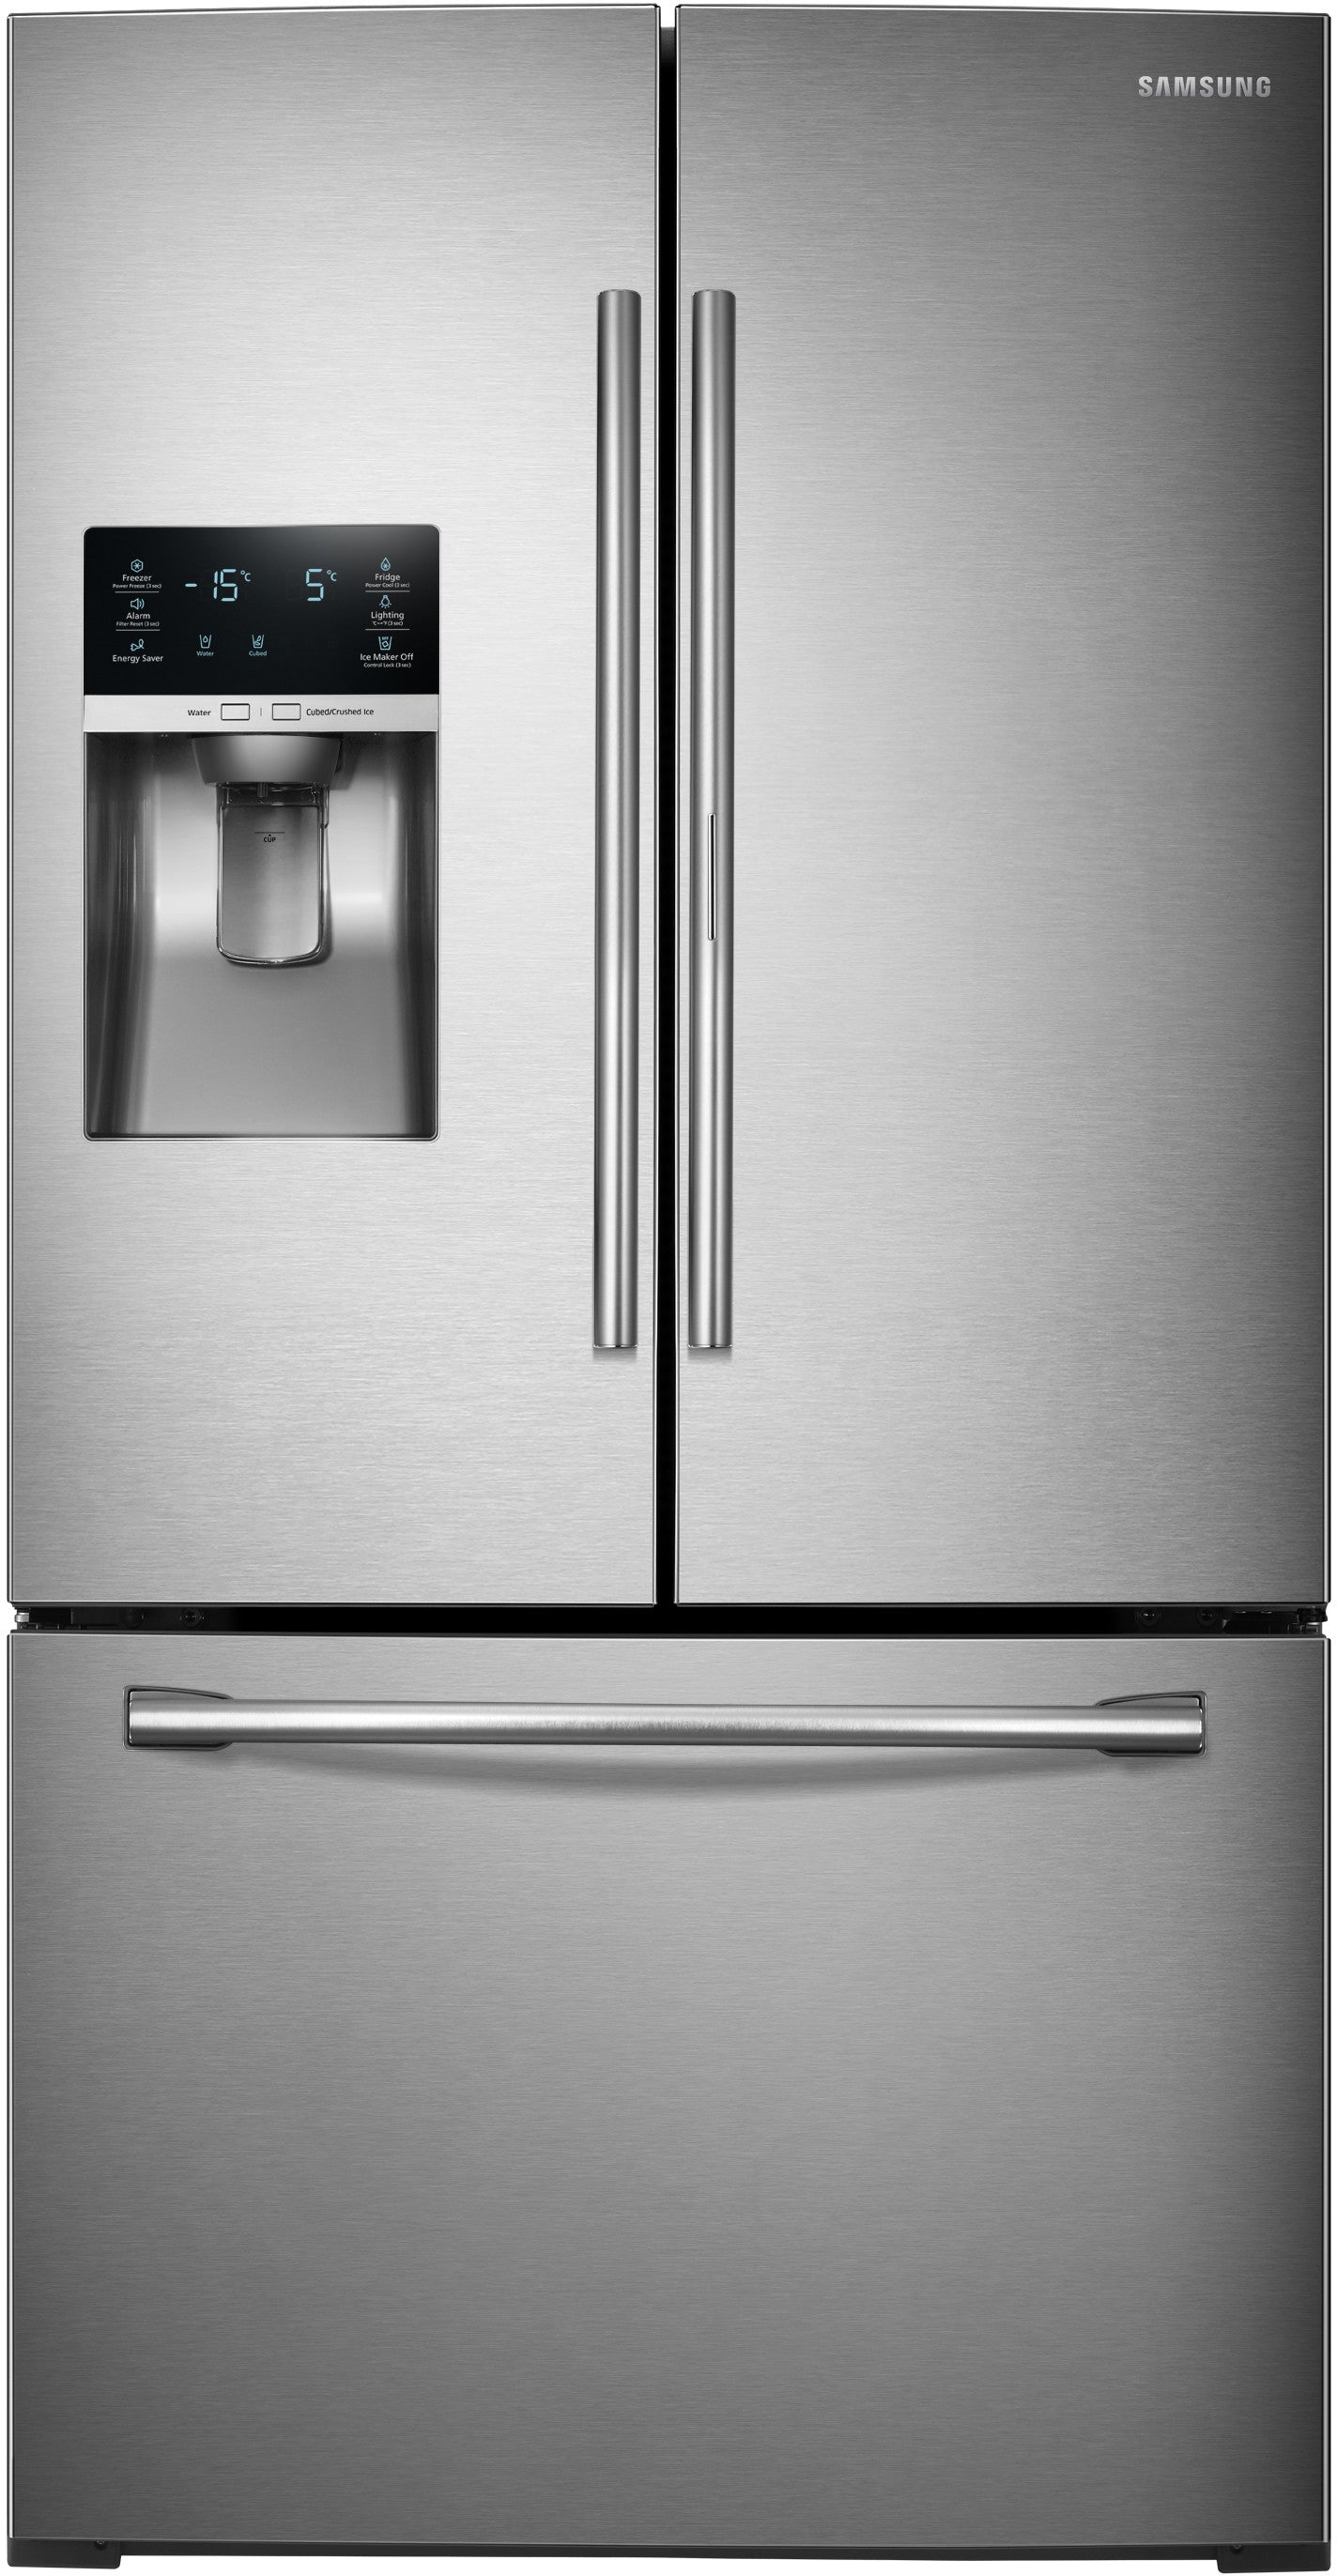 Samsung RF28HDEDBSR/AA 27.8 Cu. Ft. Food Showcase French Door Refrigerator